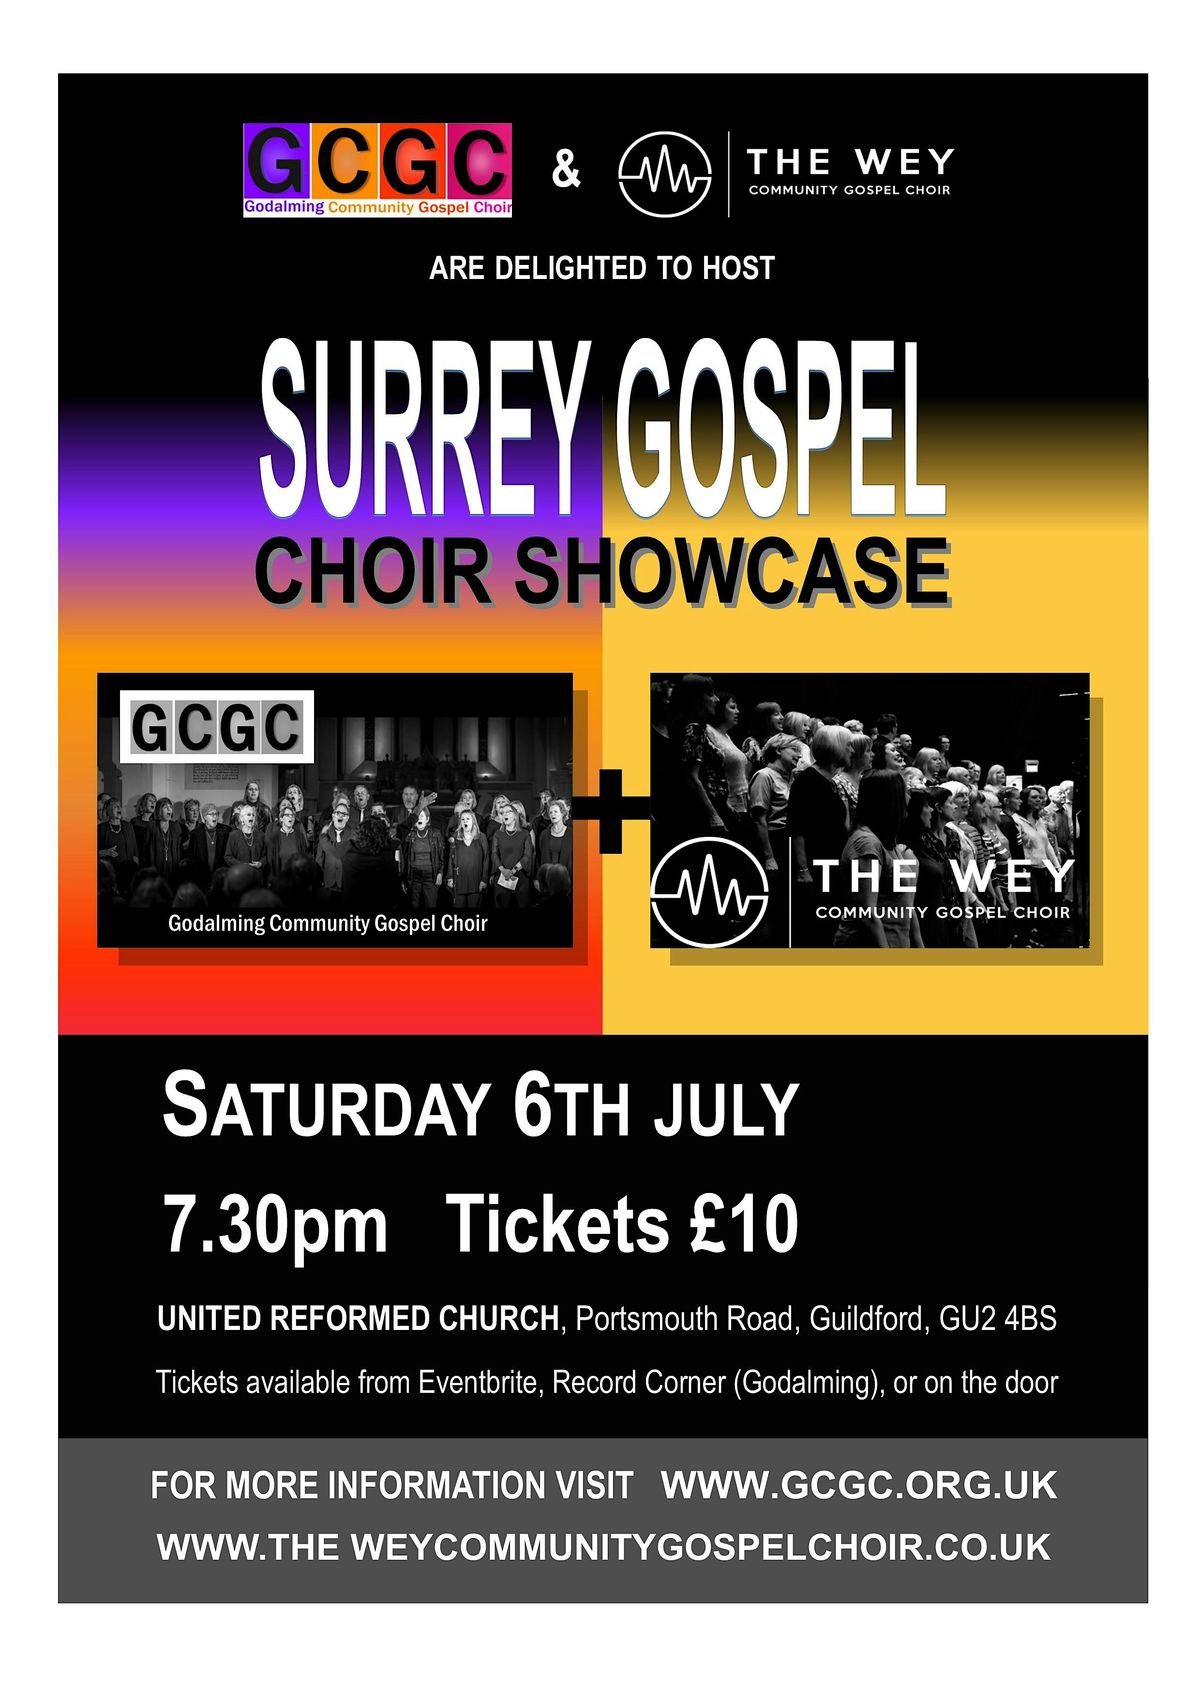 Surrey Gospel Choir Showcase